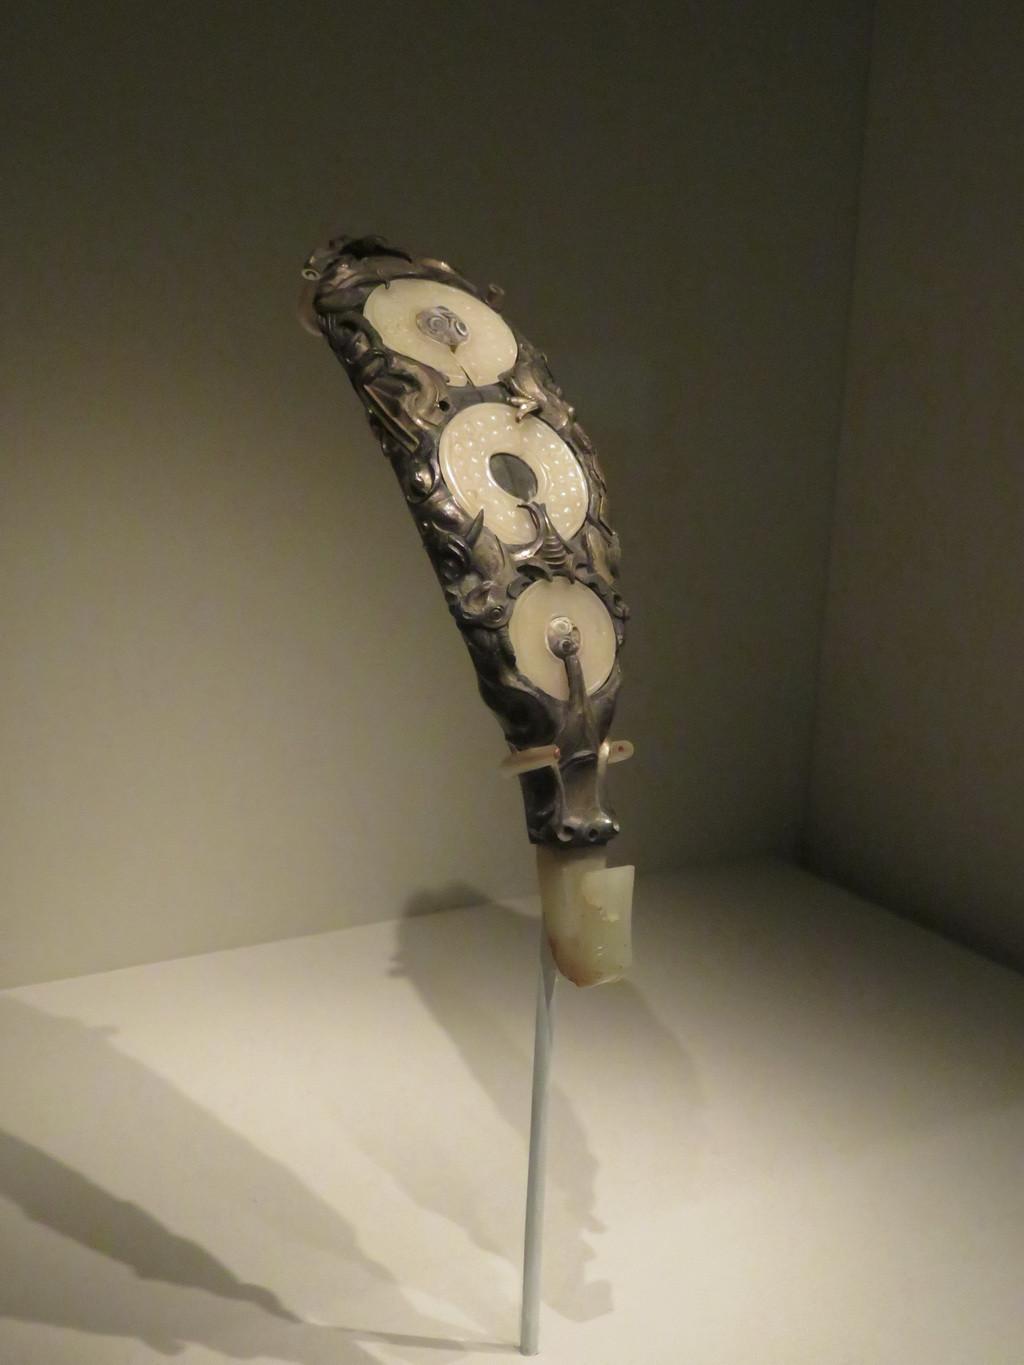 此件带钩由白银制成,器形较大,通体鎏金,钩身铸浮雕式的兽首和长尾鸟